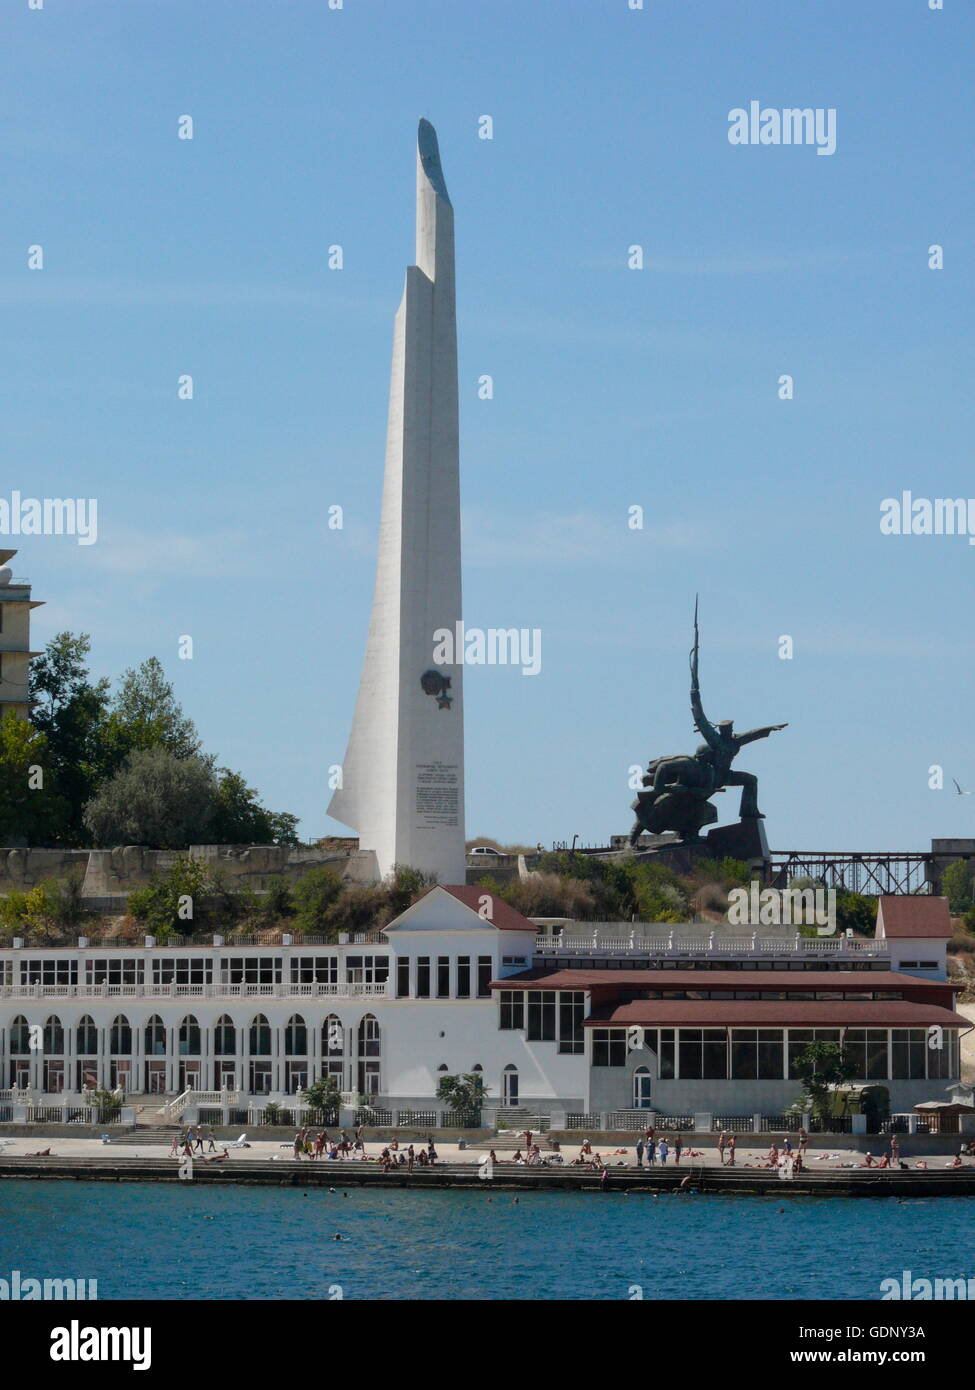 Geographie/Reisen, Ukraine, Sewastopol, Memorial Obelisken für die russische Marine in t er Port, Additional-Rights - Clearance-Info - Not-Available Stockfoto